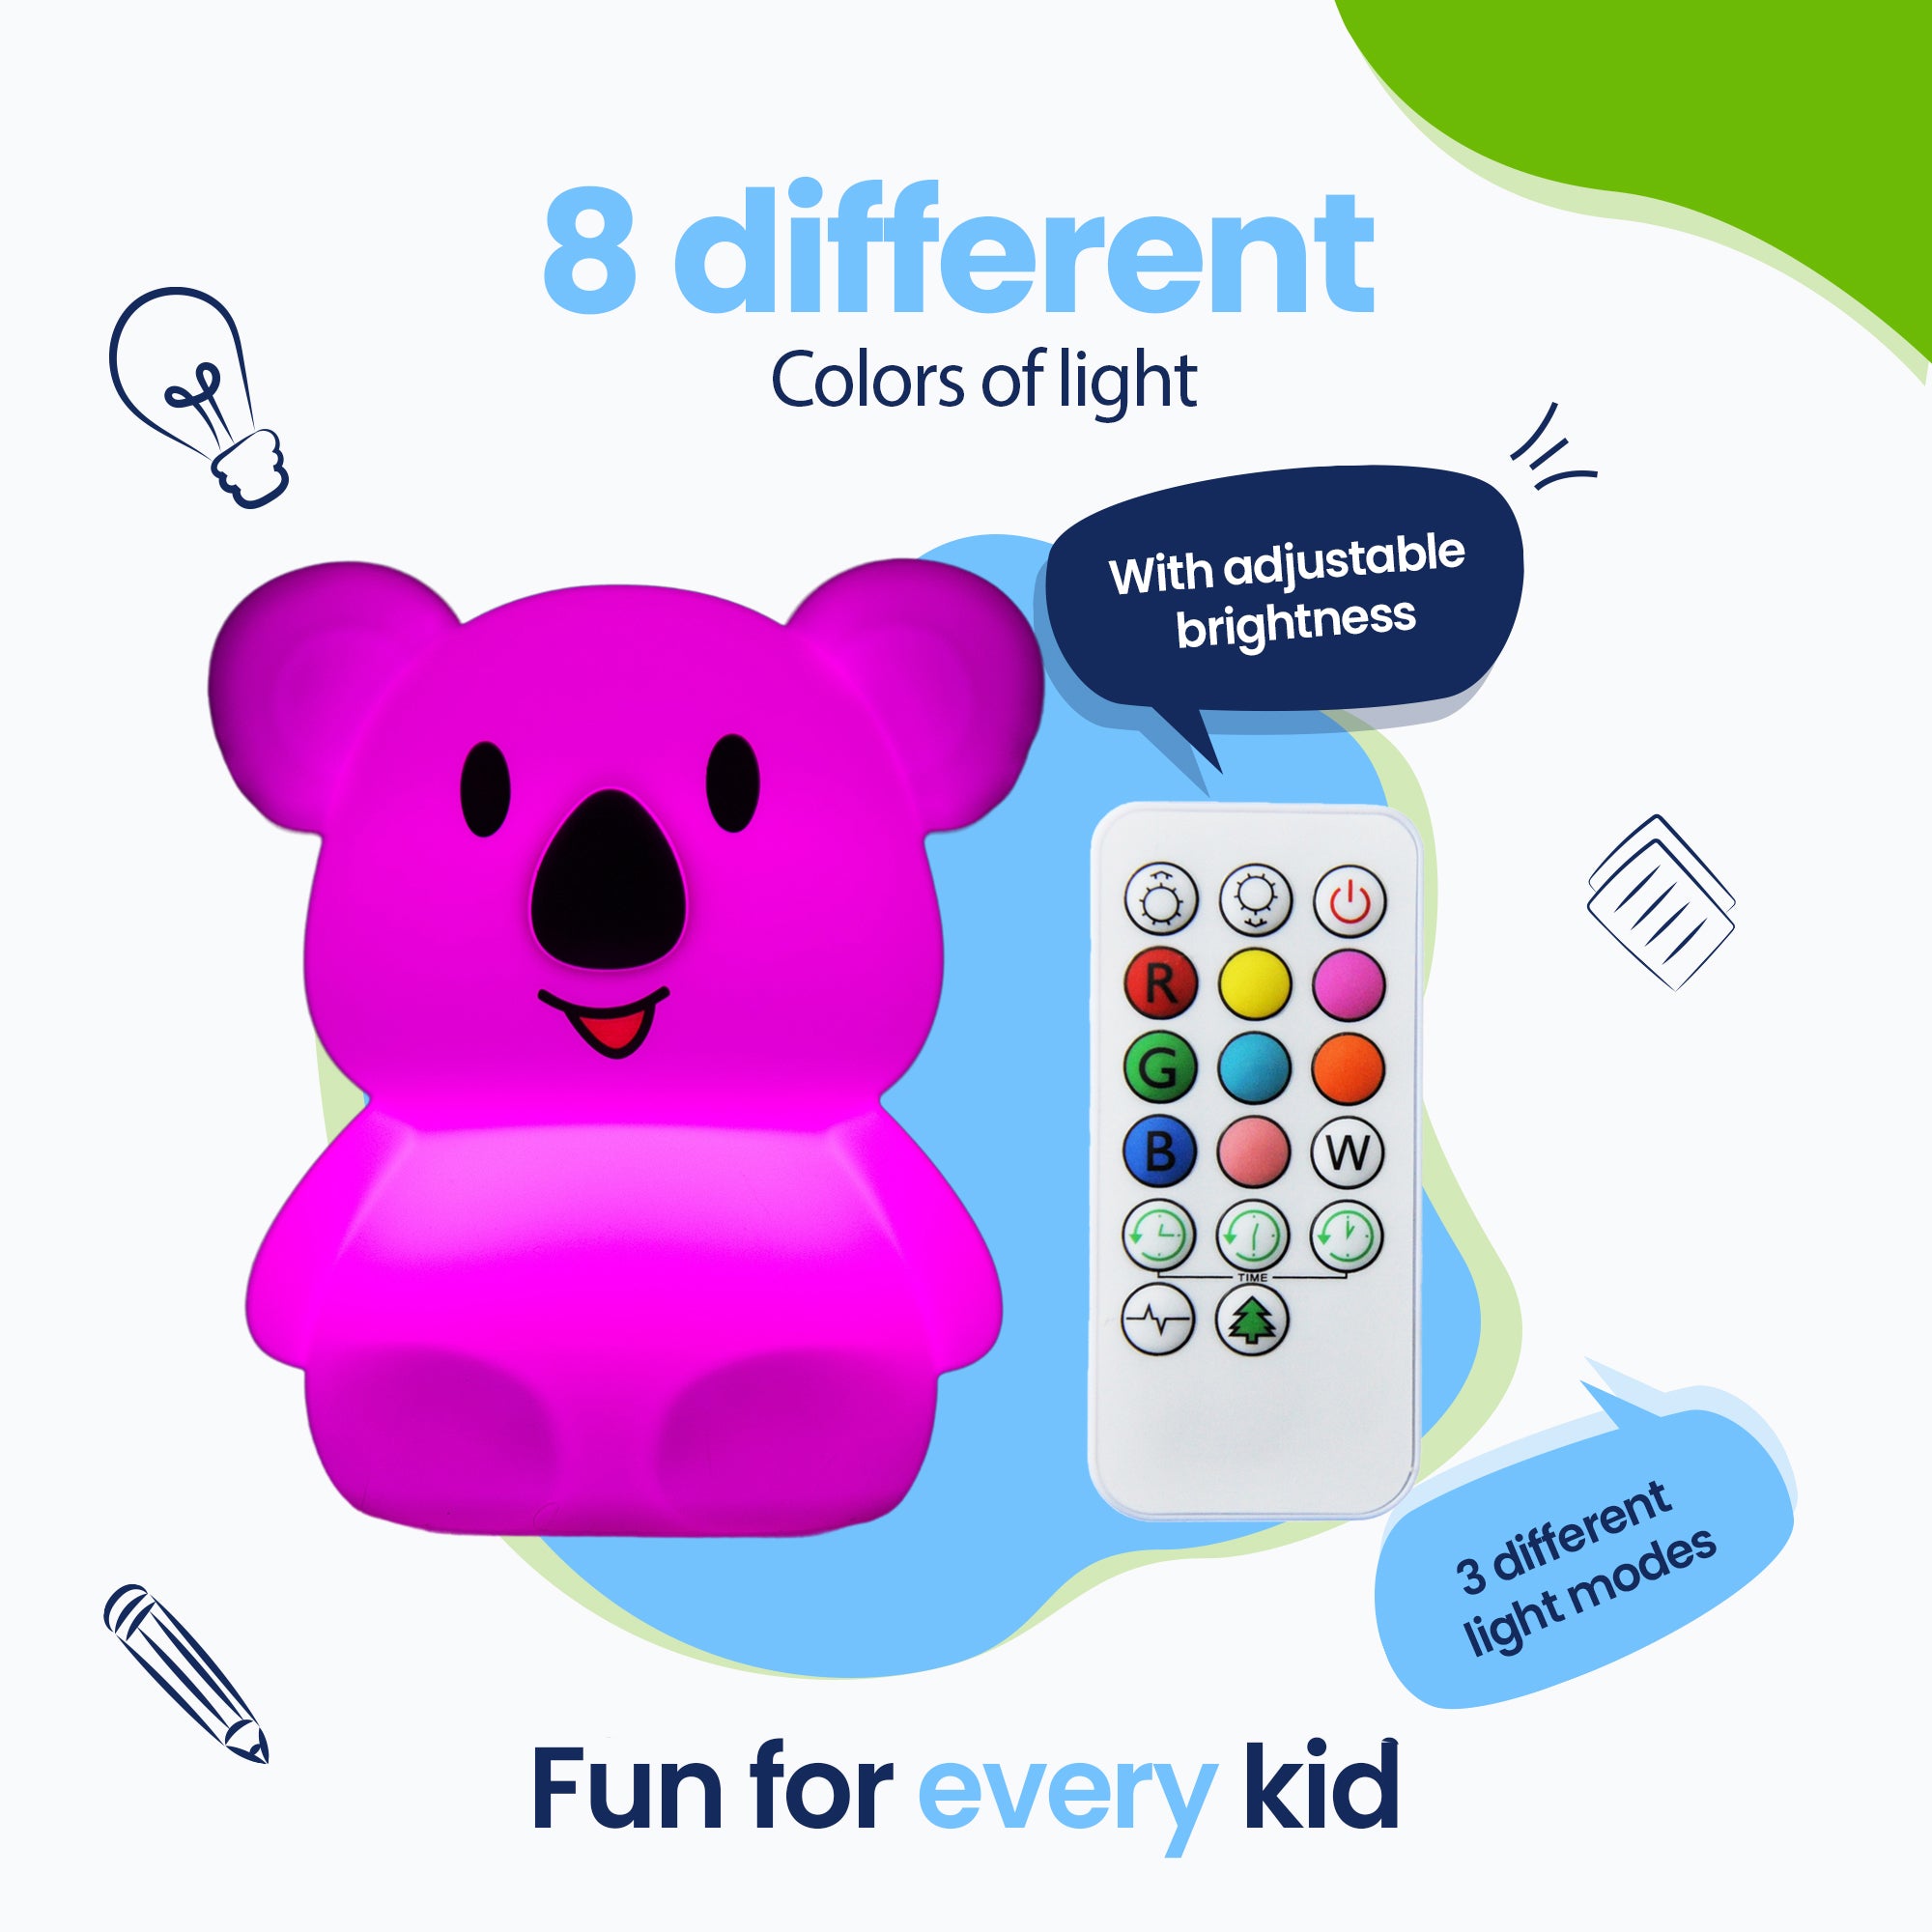 8 diversi colori di luce - 3 diverse modalità di luce - Divertimento per ogni bambino